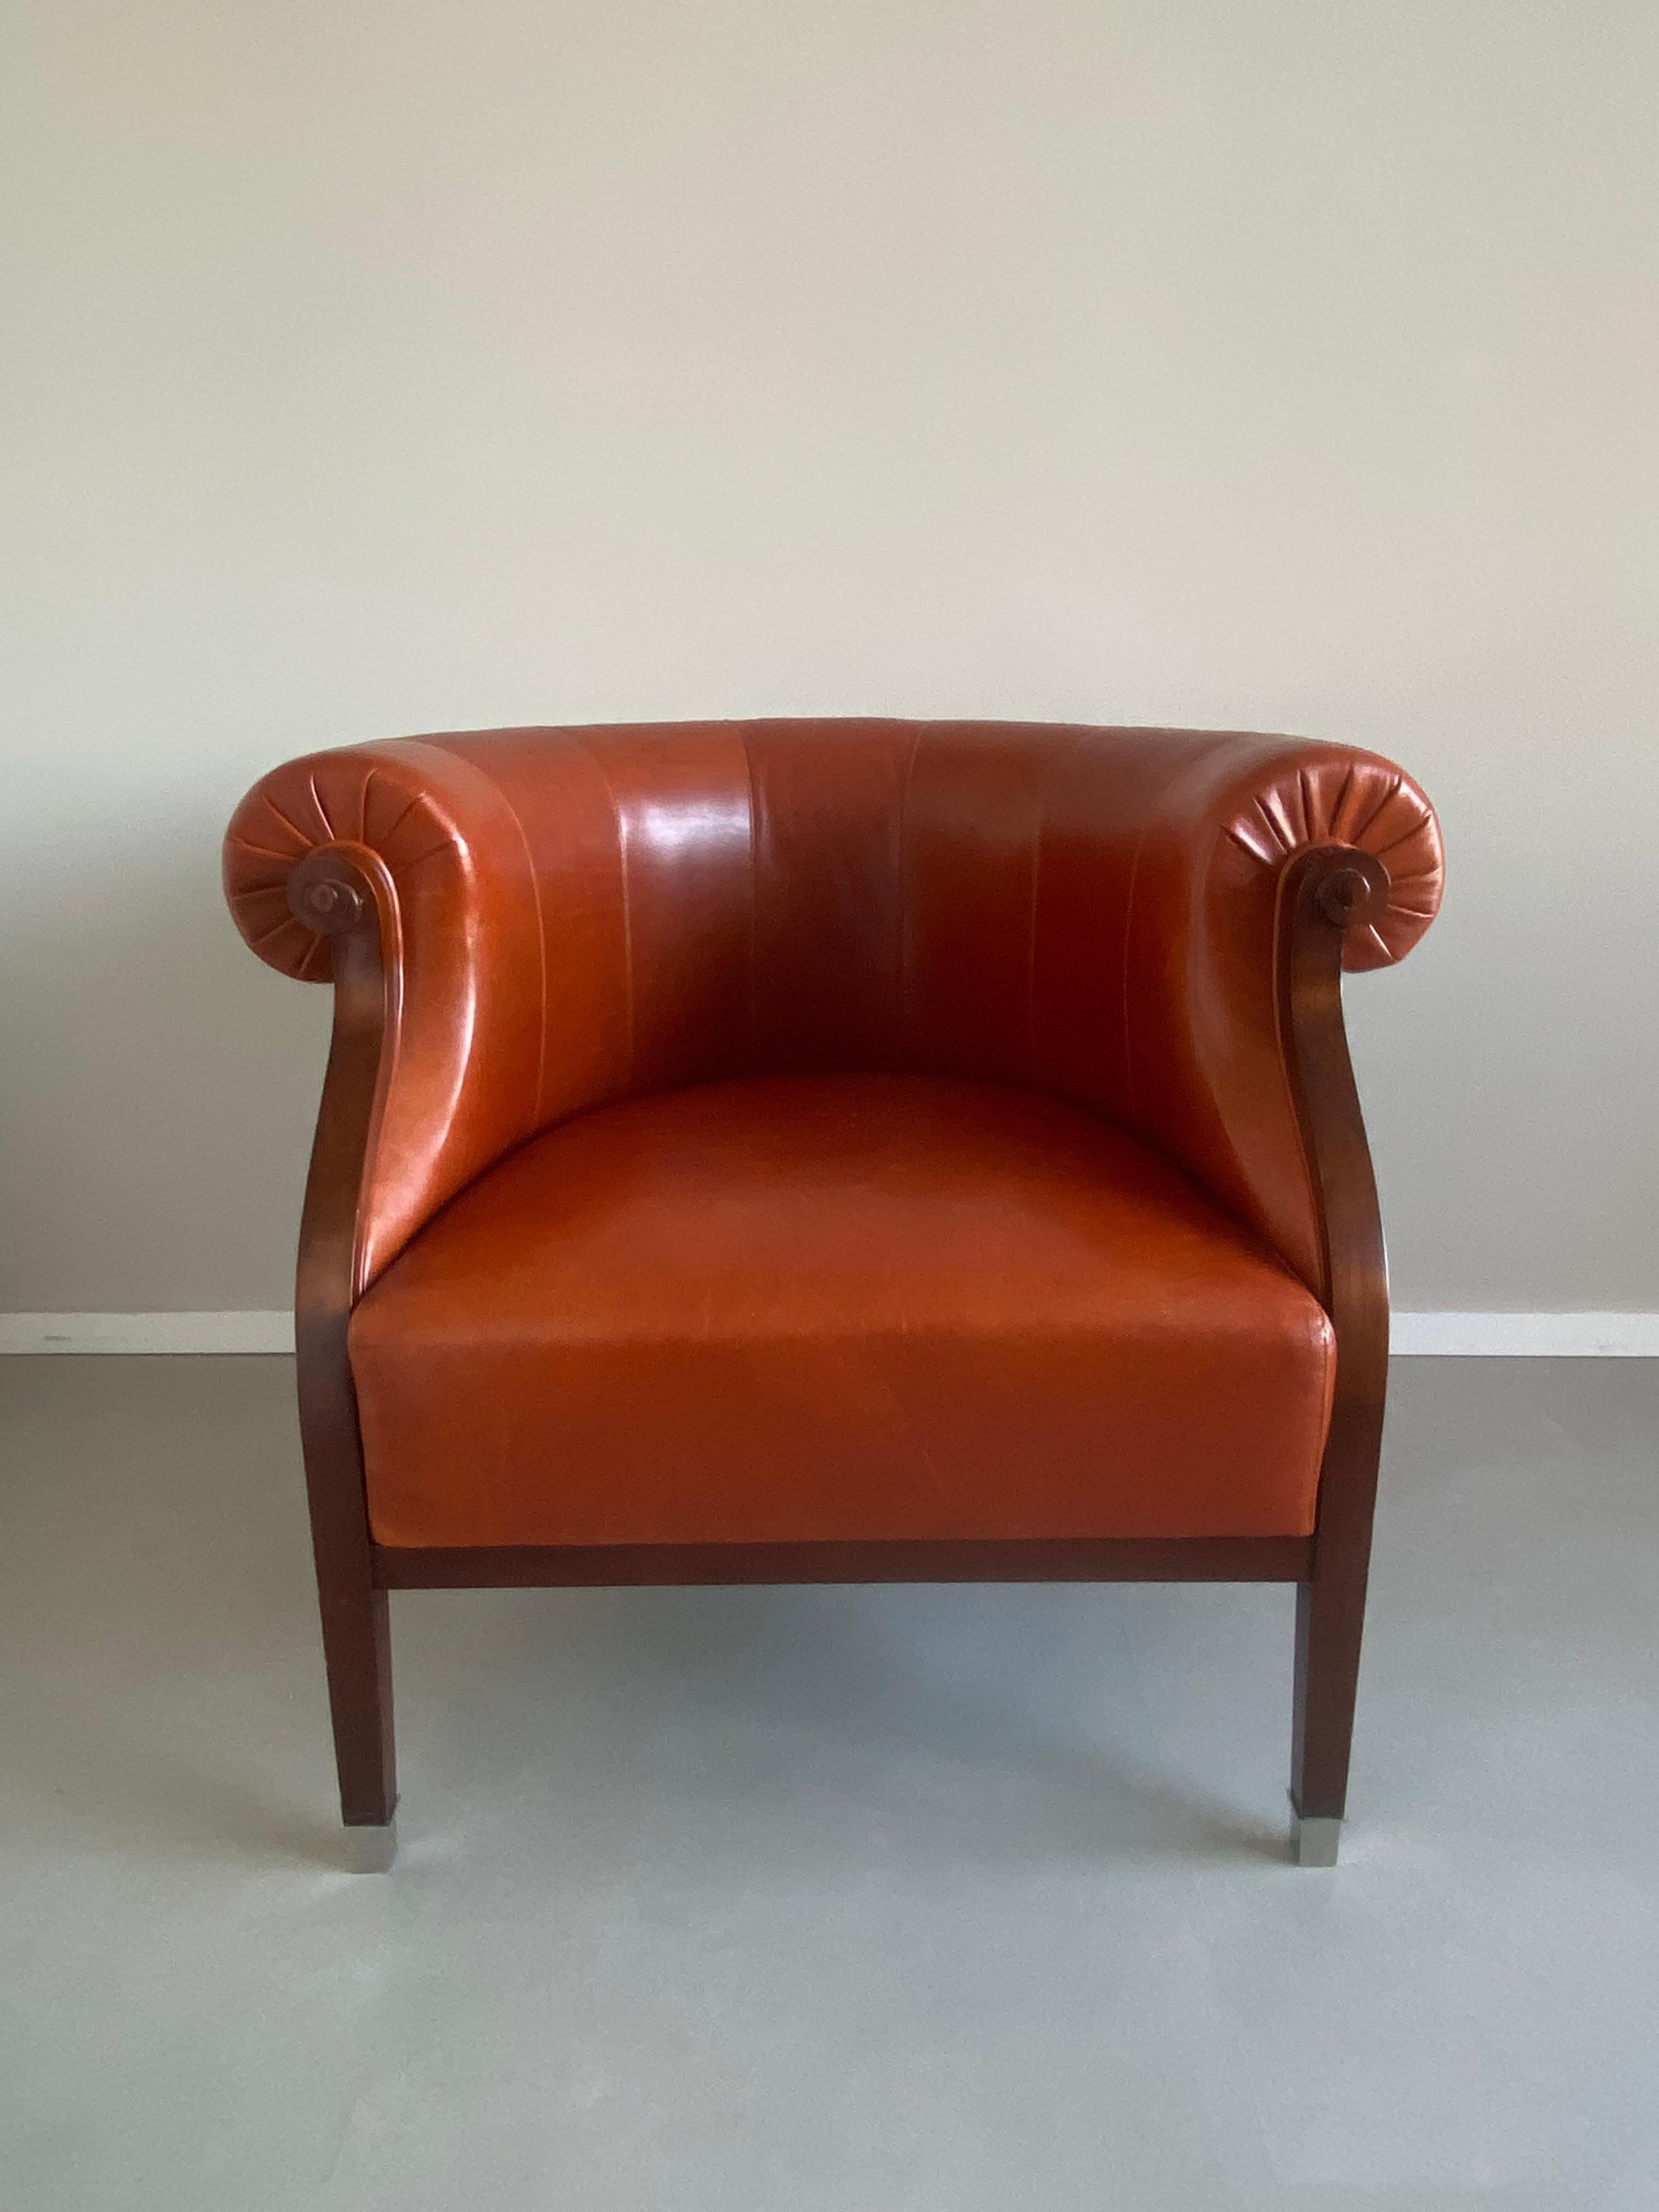 Elegant fauteuil italien qui a été fabriqué par le célèbre Annibale Colombo. La chaise est dotée d'une base en merisier, d'une assise, d'un dossier et d'accoudoirs en cuir de couleur cognac et de détails tels que des pieds en acier inoxydable. Cette